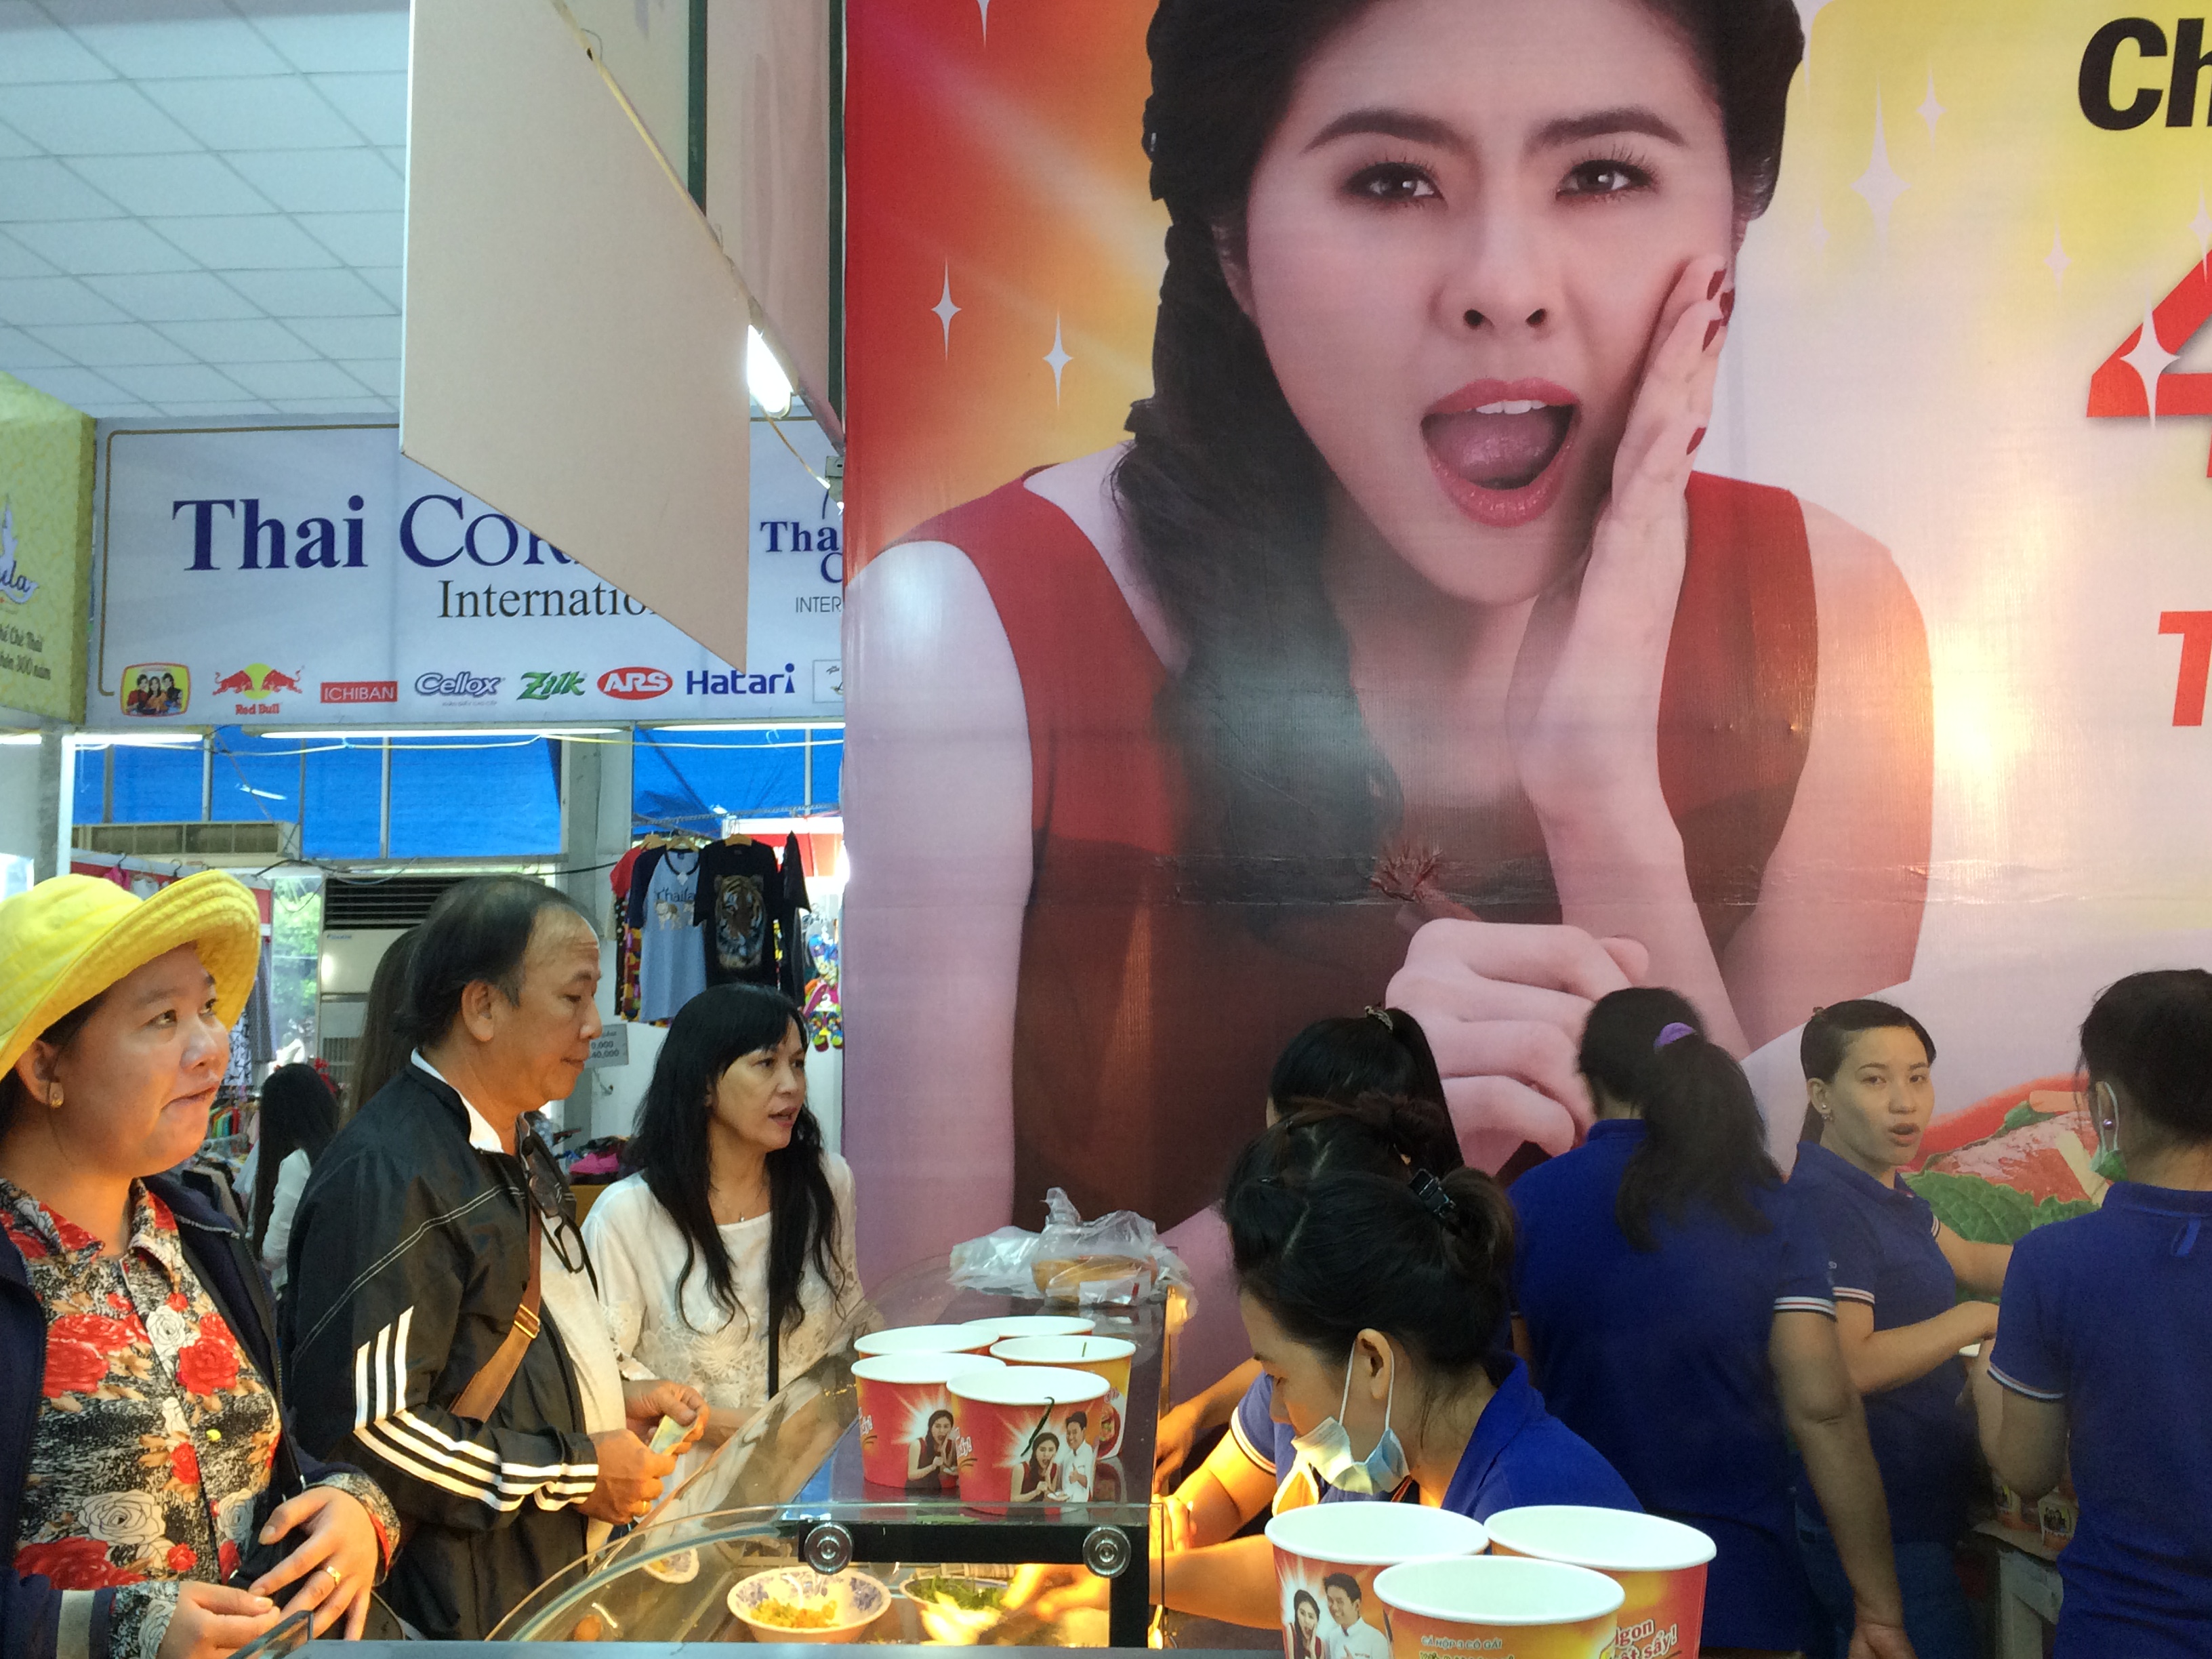 Thức ăn nhanh của Thái tìm đủ mọi cách lấy lòng người tiêu dùng- ảnh HL